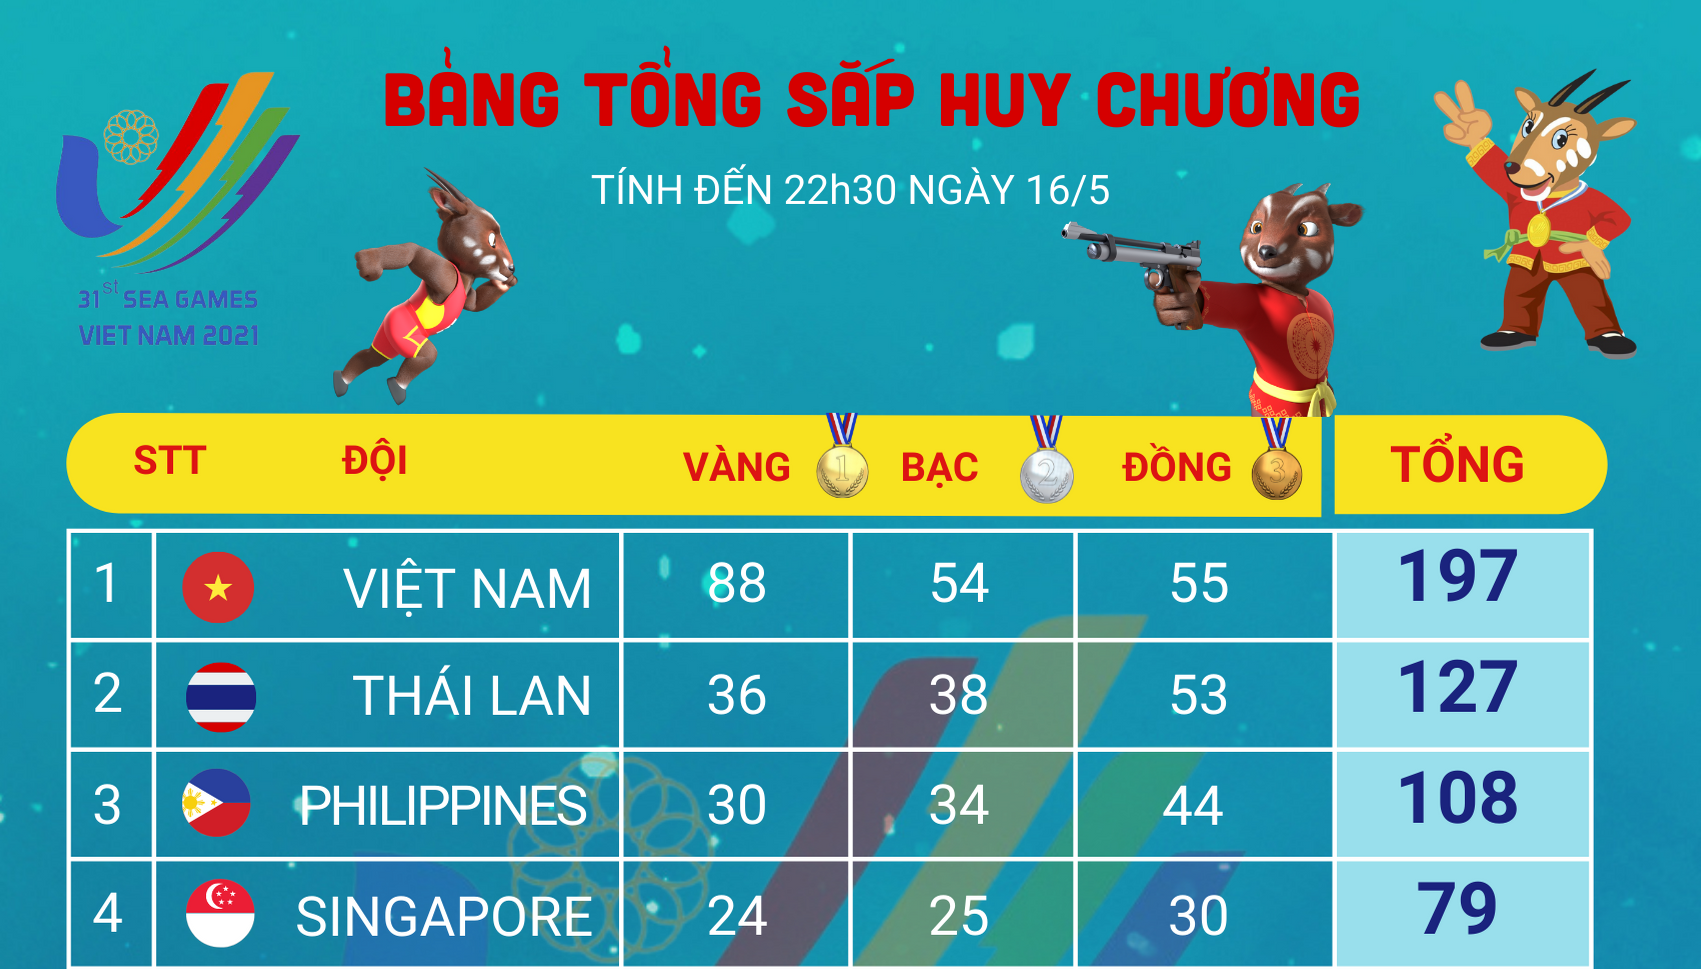 [Infographics] Bảng tổng sắp huy chương SEA Games 31 ngày 16/5: Việt Nam hơn đội đứng thứ 2 tới 52 HCV